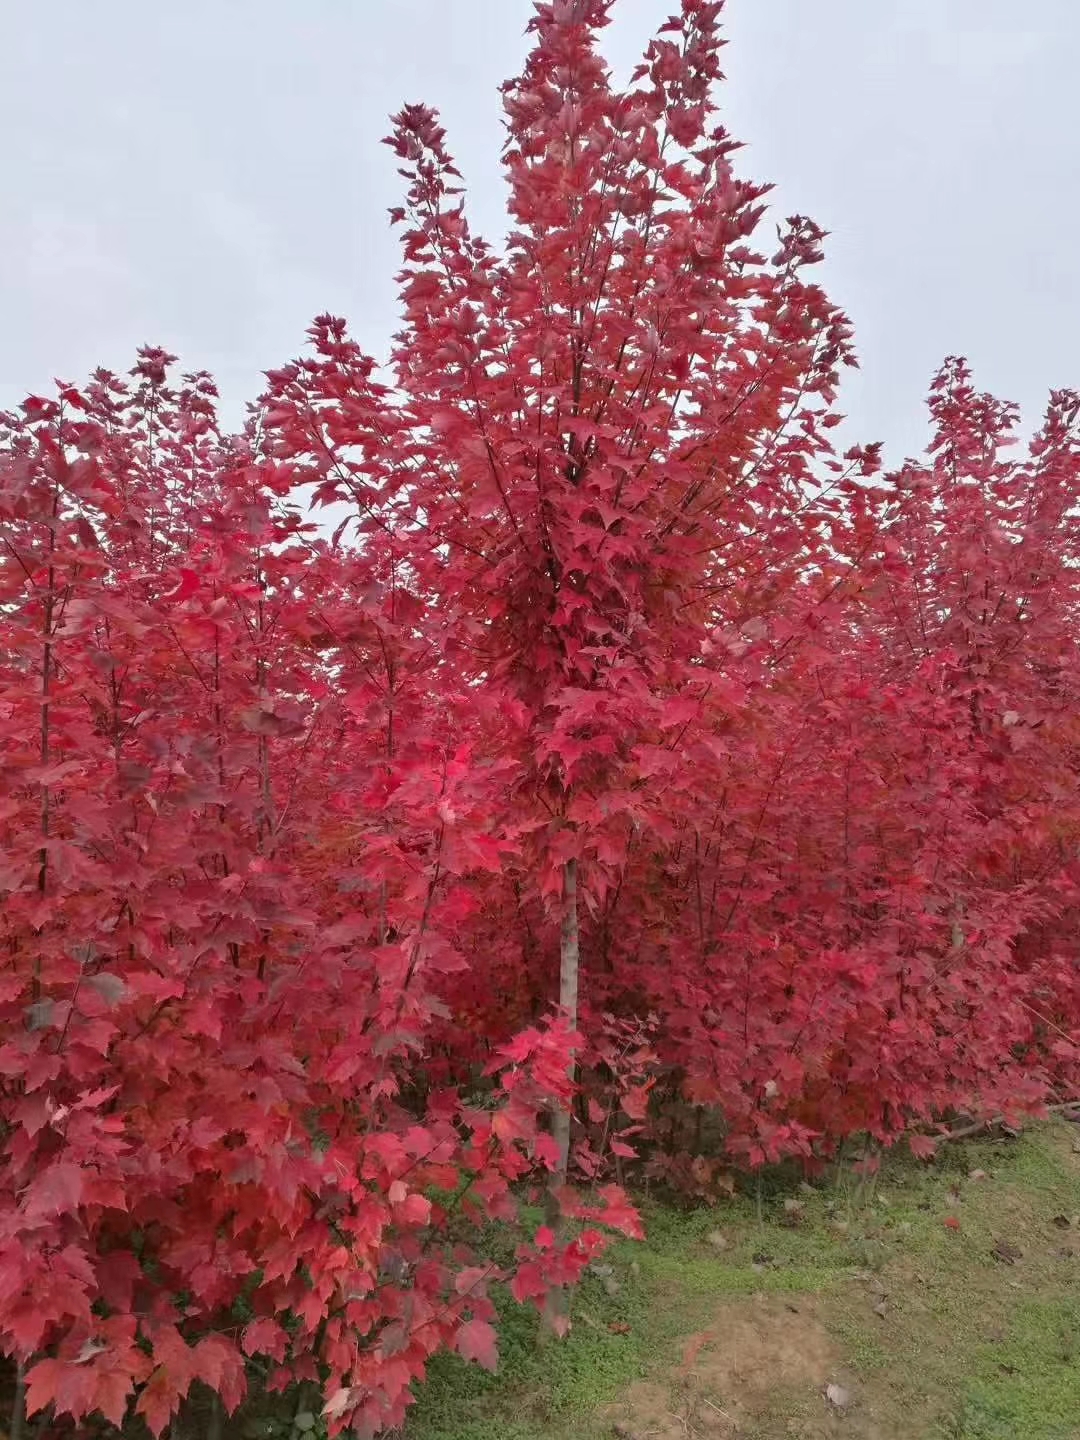 沭阳赛锦园林美国红枫红冠苗圃自育 占地树苗适合株洲栽植图片